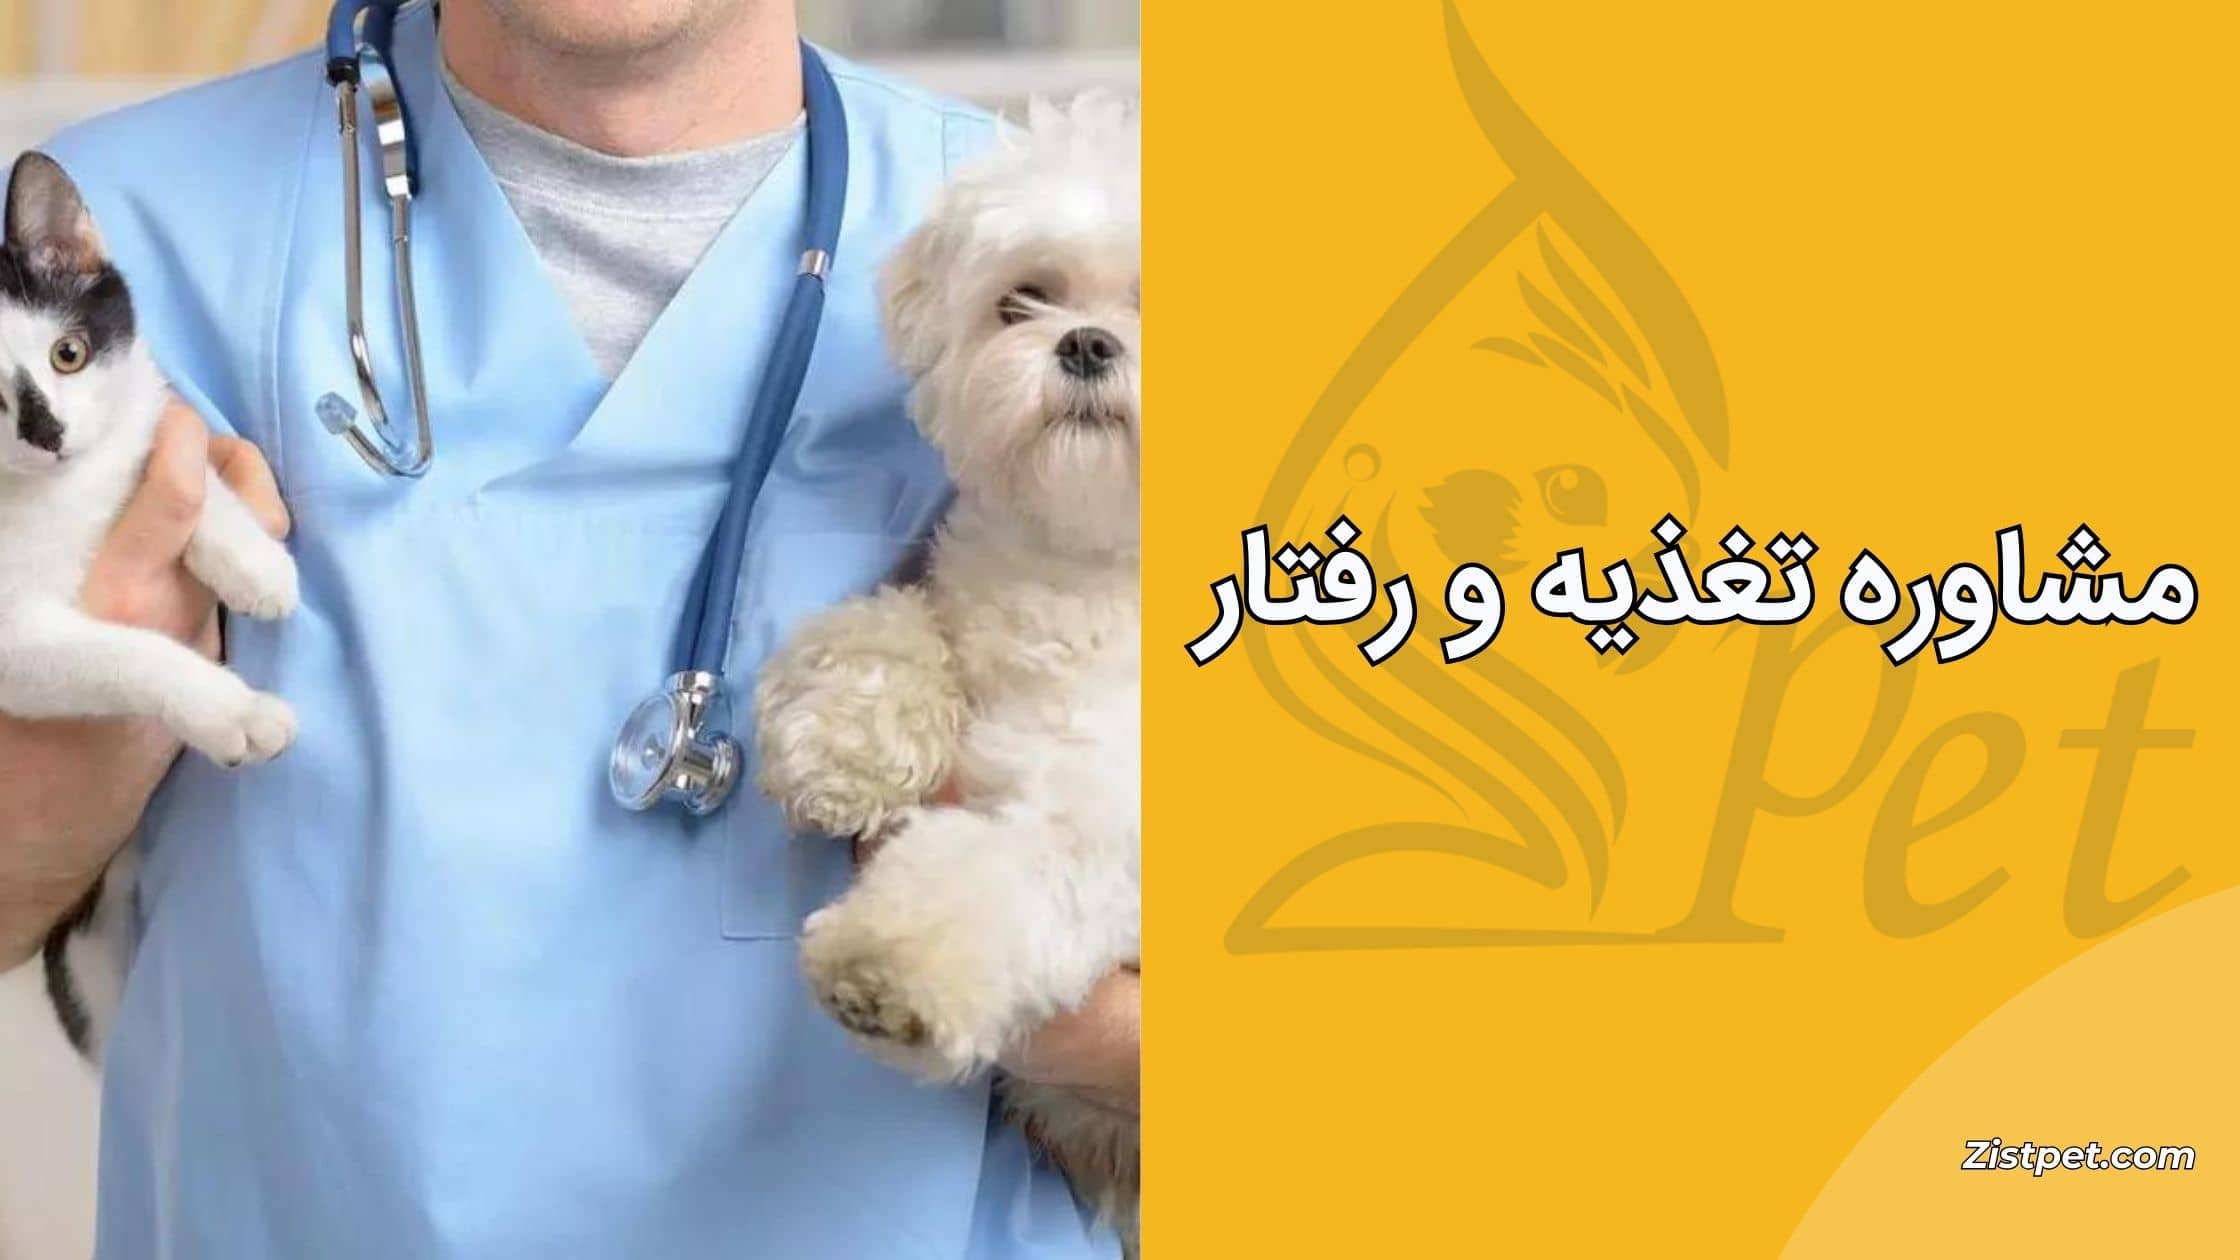 مشاوره تغذیه و رفتار از خدمات دامپزشک تهران